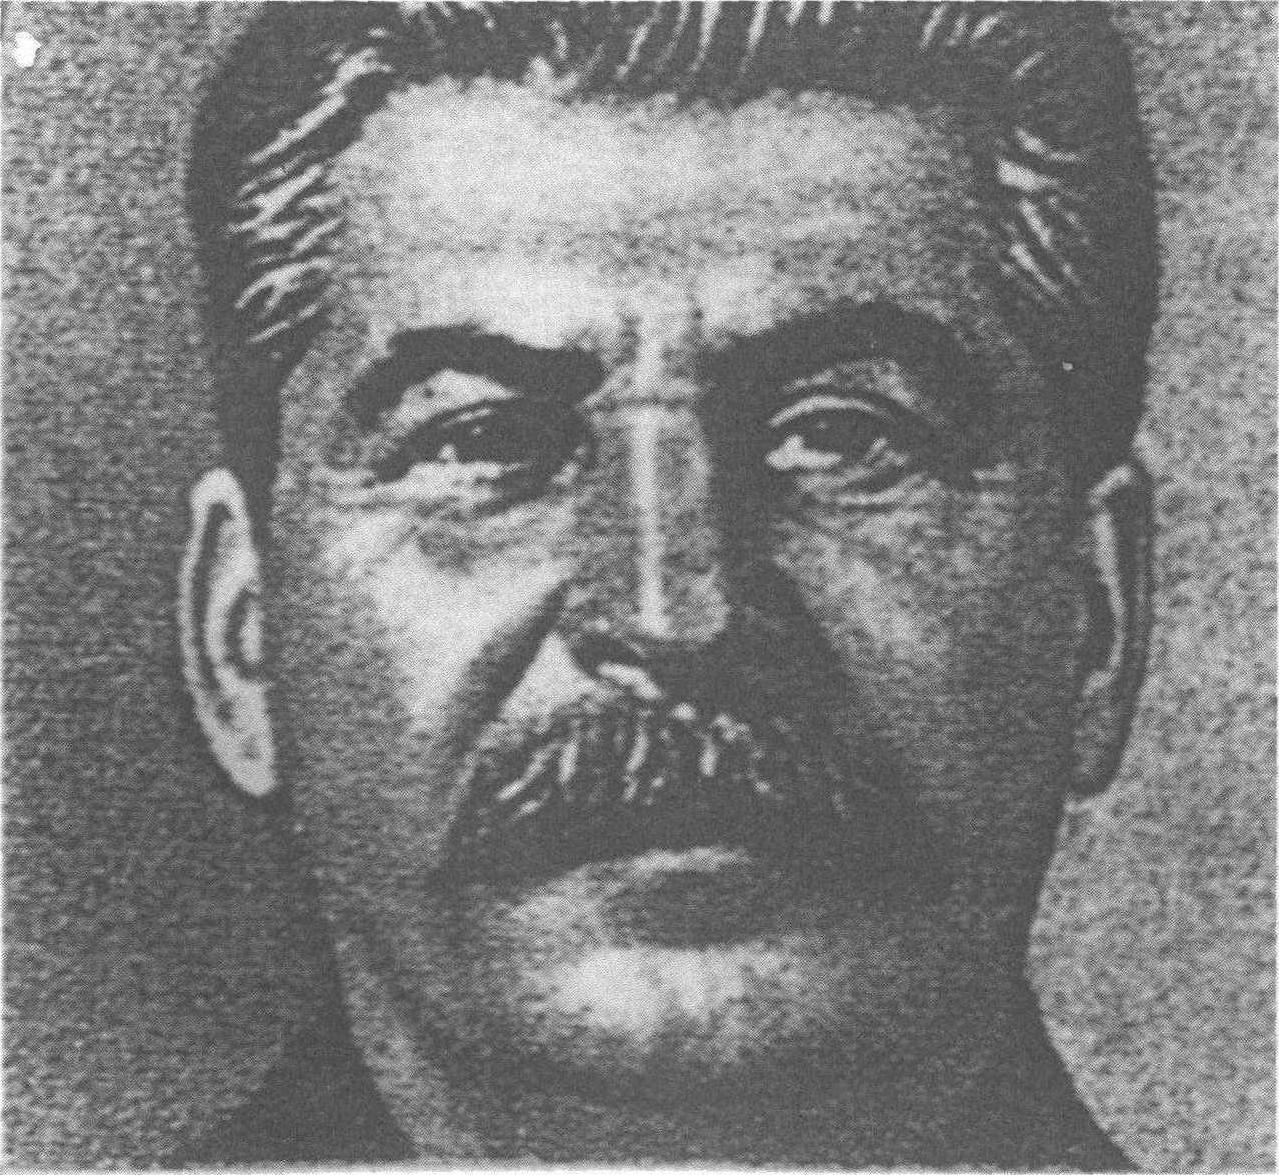 斯大林的最后一部著作——《苏联社会主义经济问题》出版